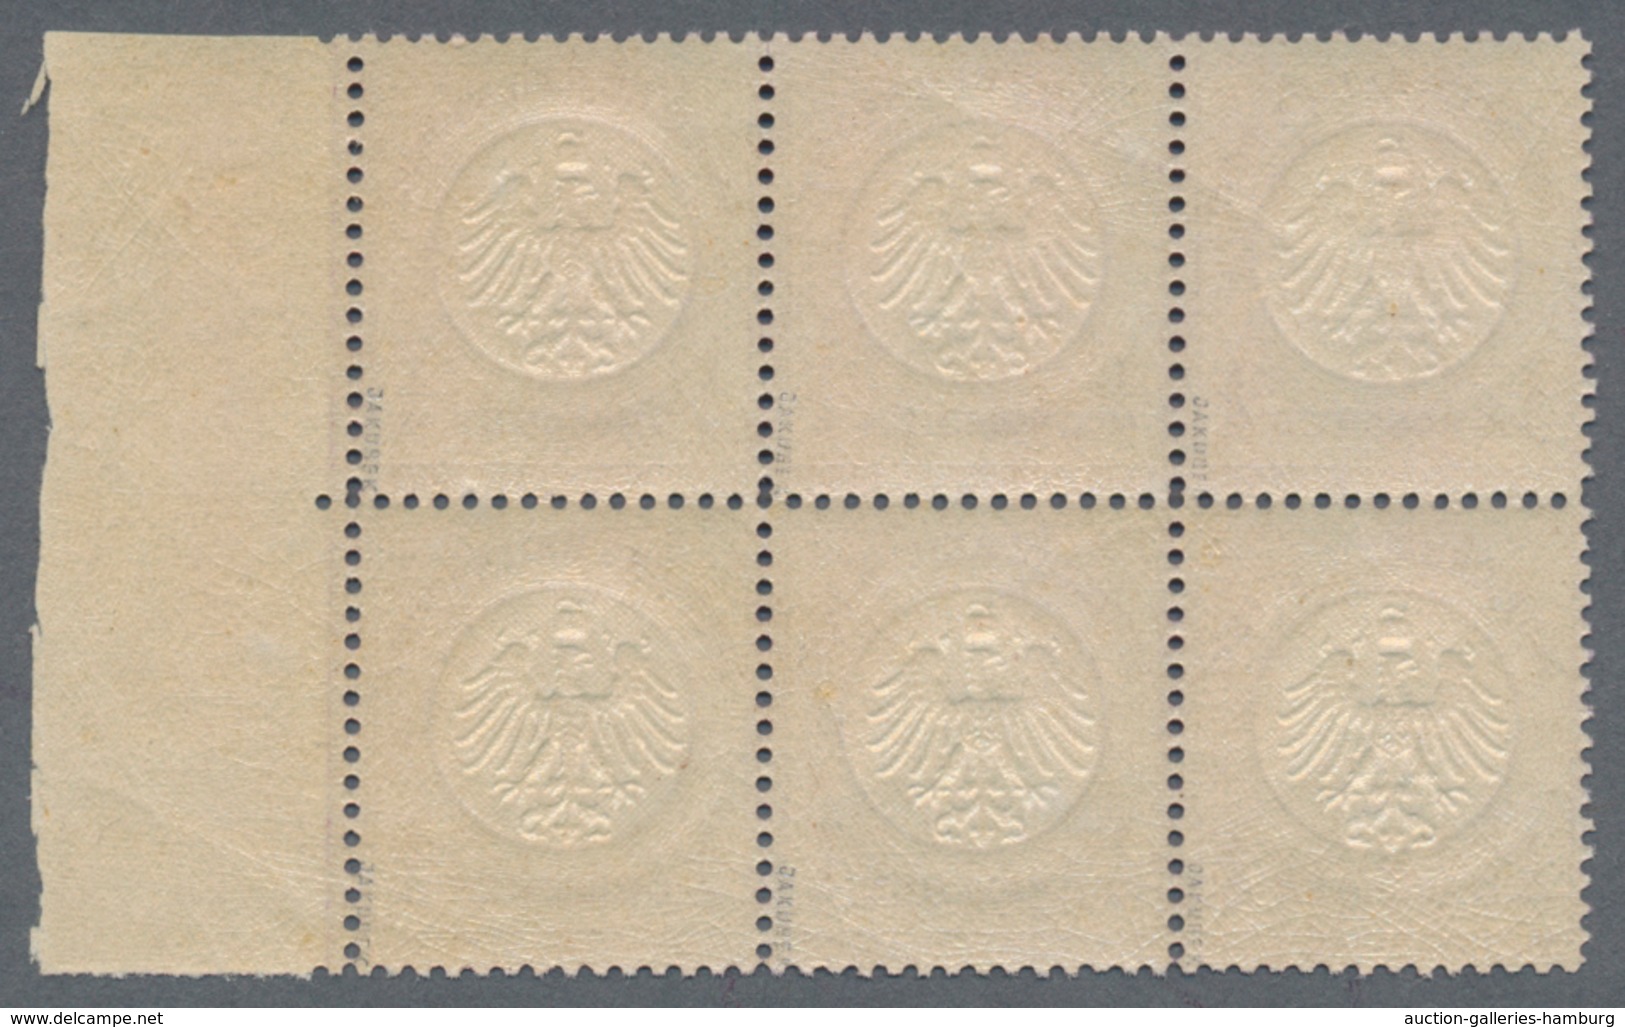 Deutsches Reich - Brustschild: 1872, 1/4 Gr. Grauviolett, Kleiner Schild Im Waagerechten 6er-Block M - Nuevos